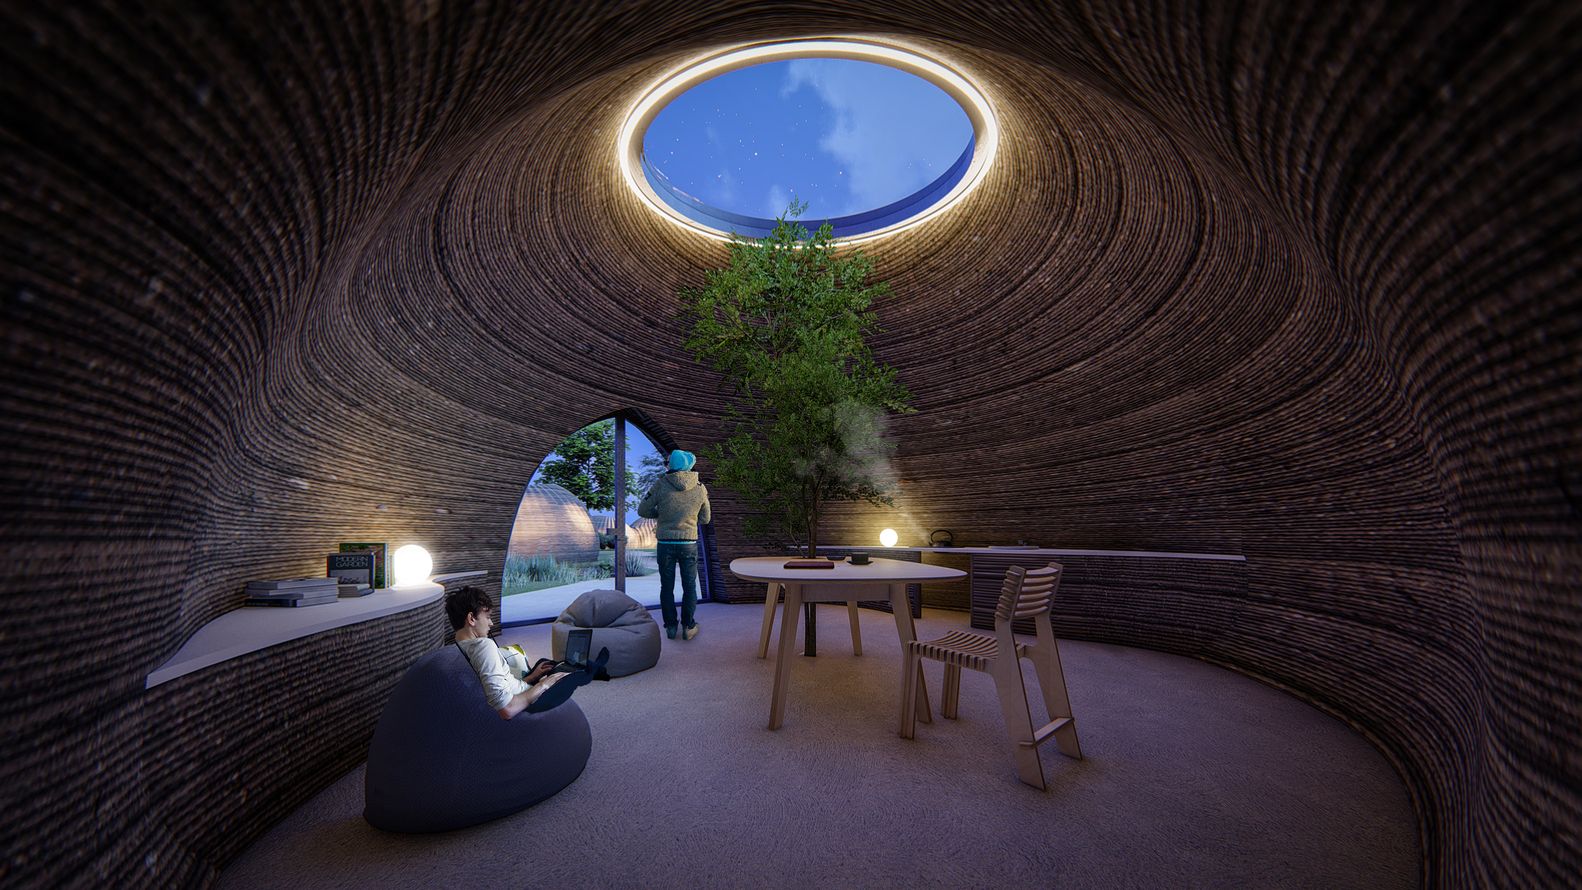 Дом, построенный с помощью 3D-принтера, TECLA, Италия, Mario Cucinella Architects + WASP (дом из глины и рисовой шелухи, строительство заняло 200 часов)   